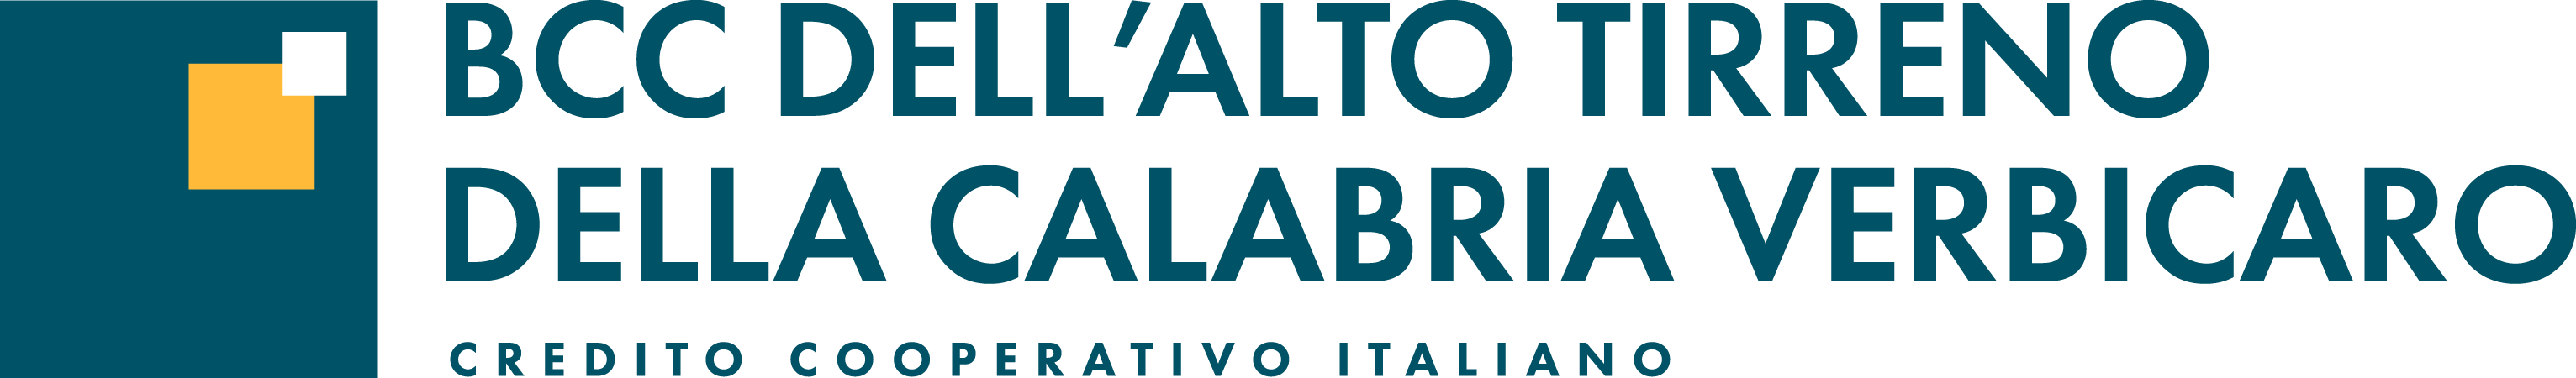 Logo BCC dell'Alto Tirreno della Calabria - Verbicaro